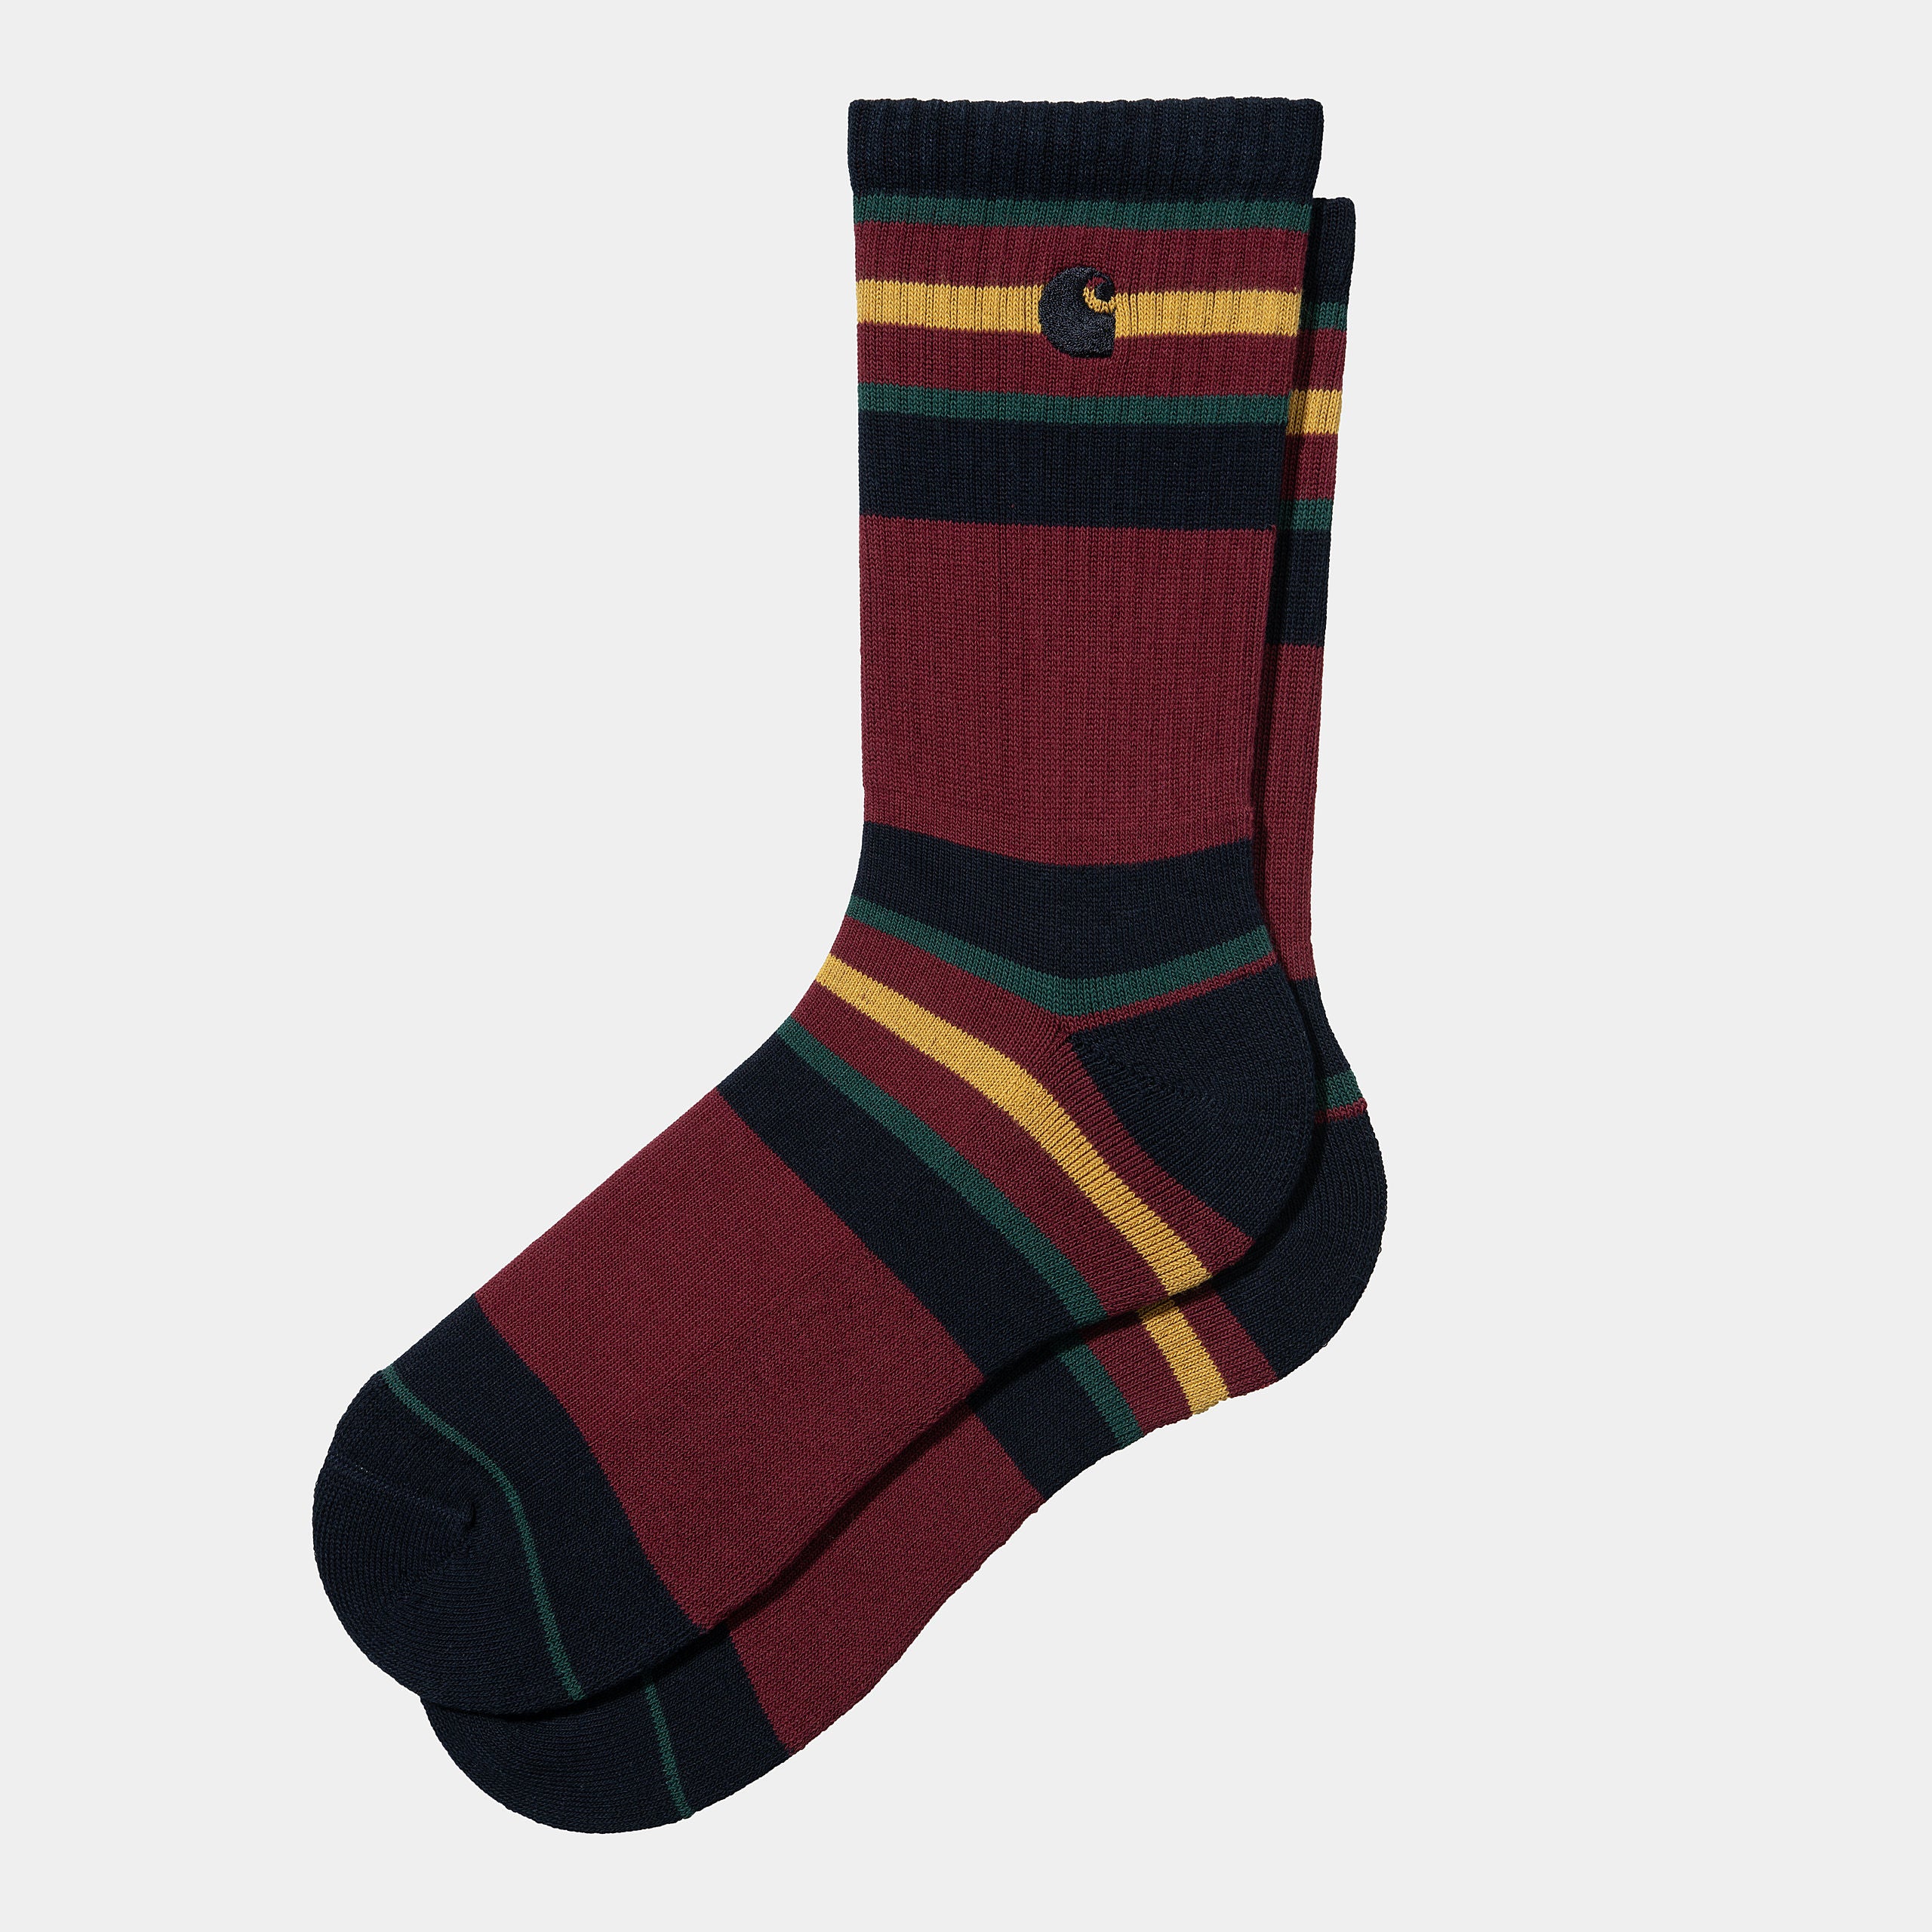 oregon-socks-starco-stripe-bordeaux-1171_png.jpg